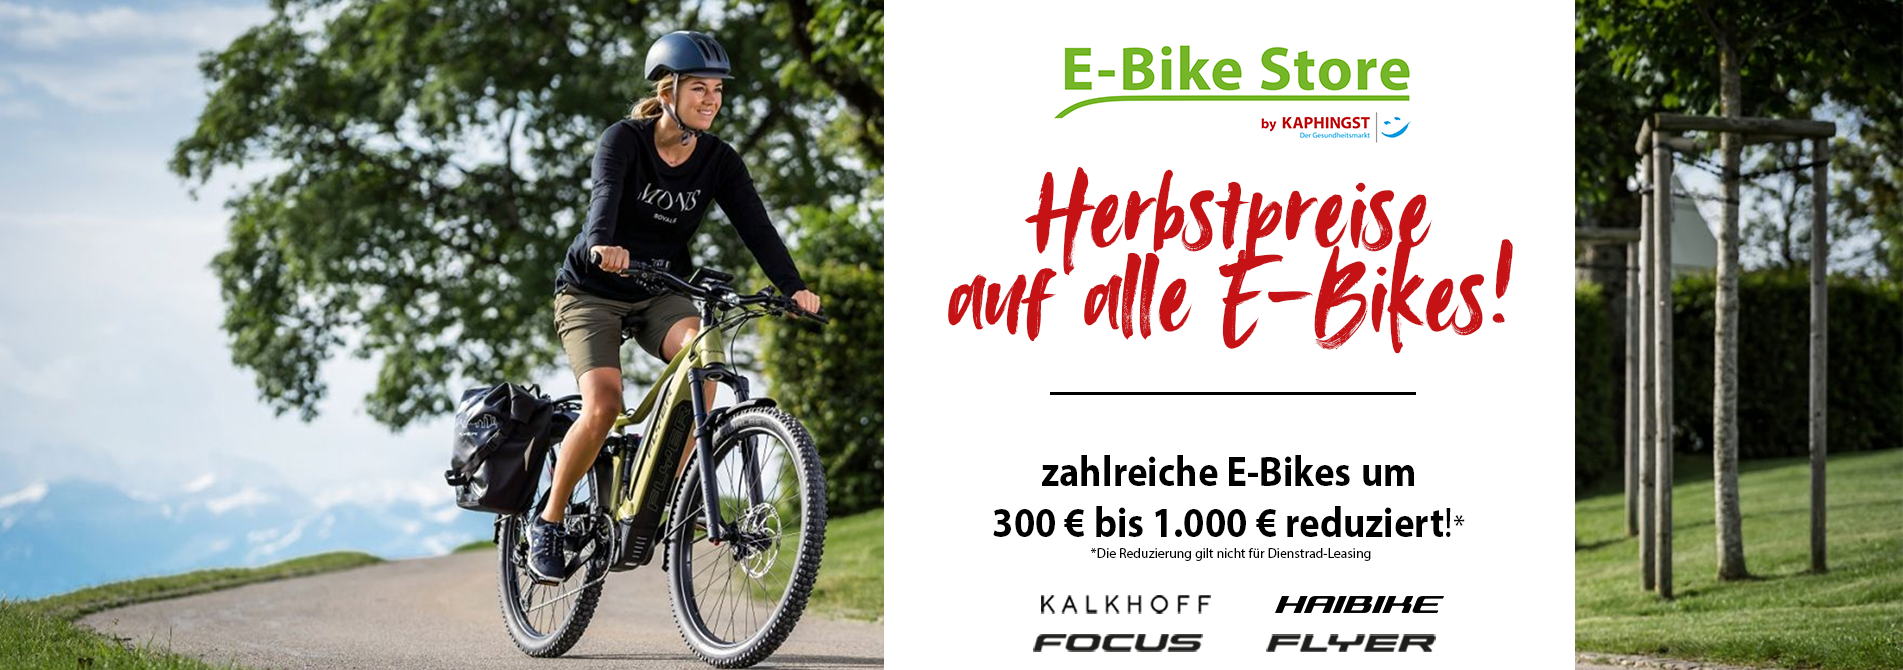 Herbstpreise auf alle E-Bikes: Zahlreiche E-Bikes bis zu 1.000€ reduziert